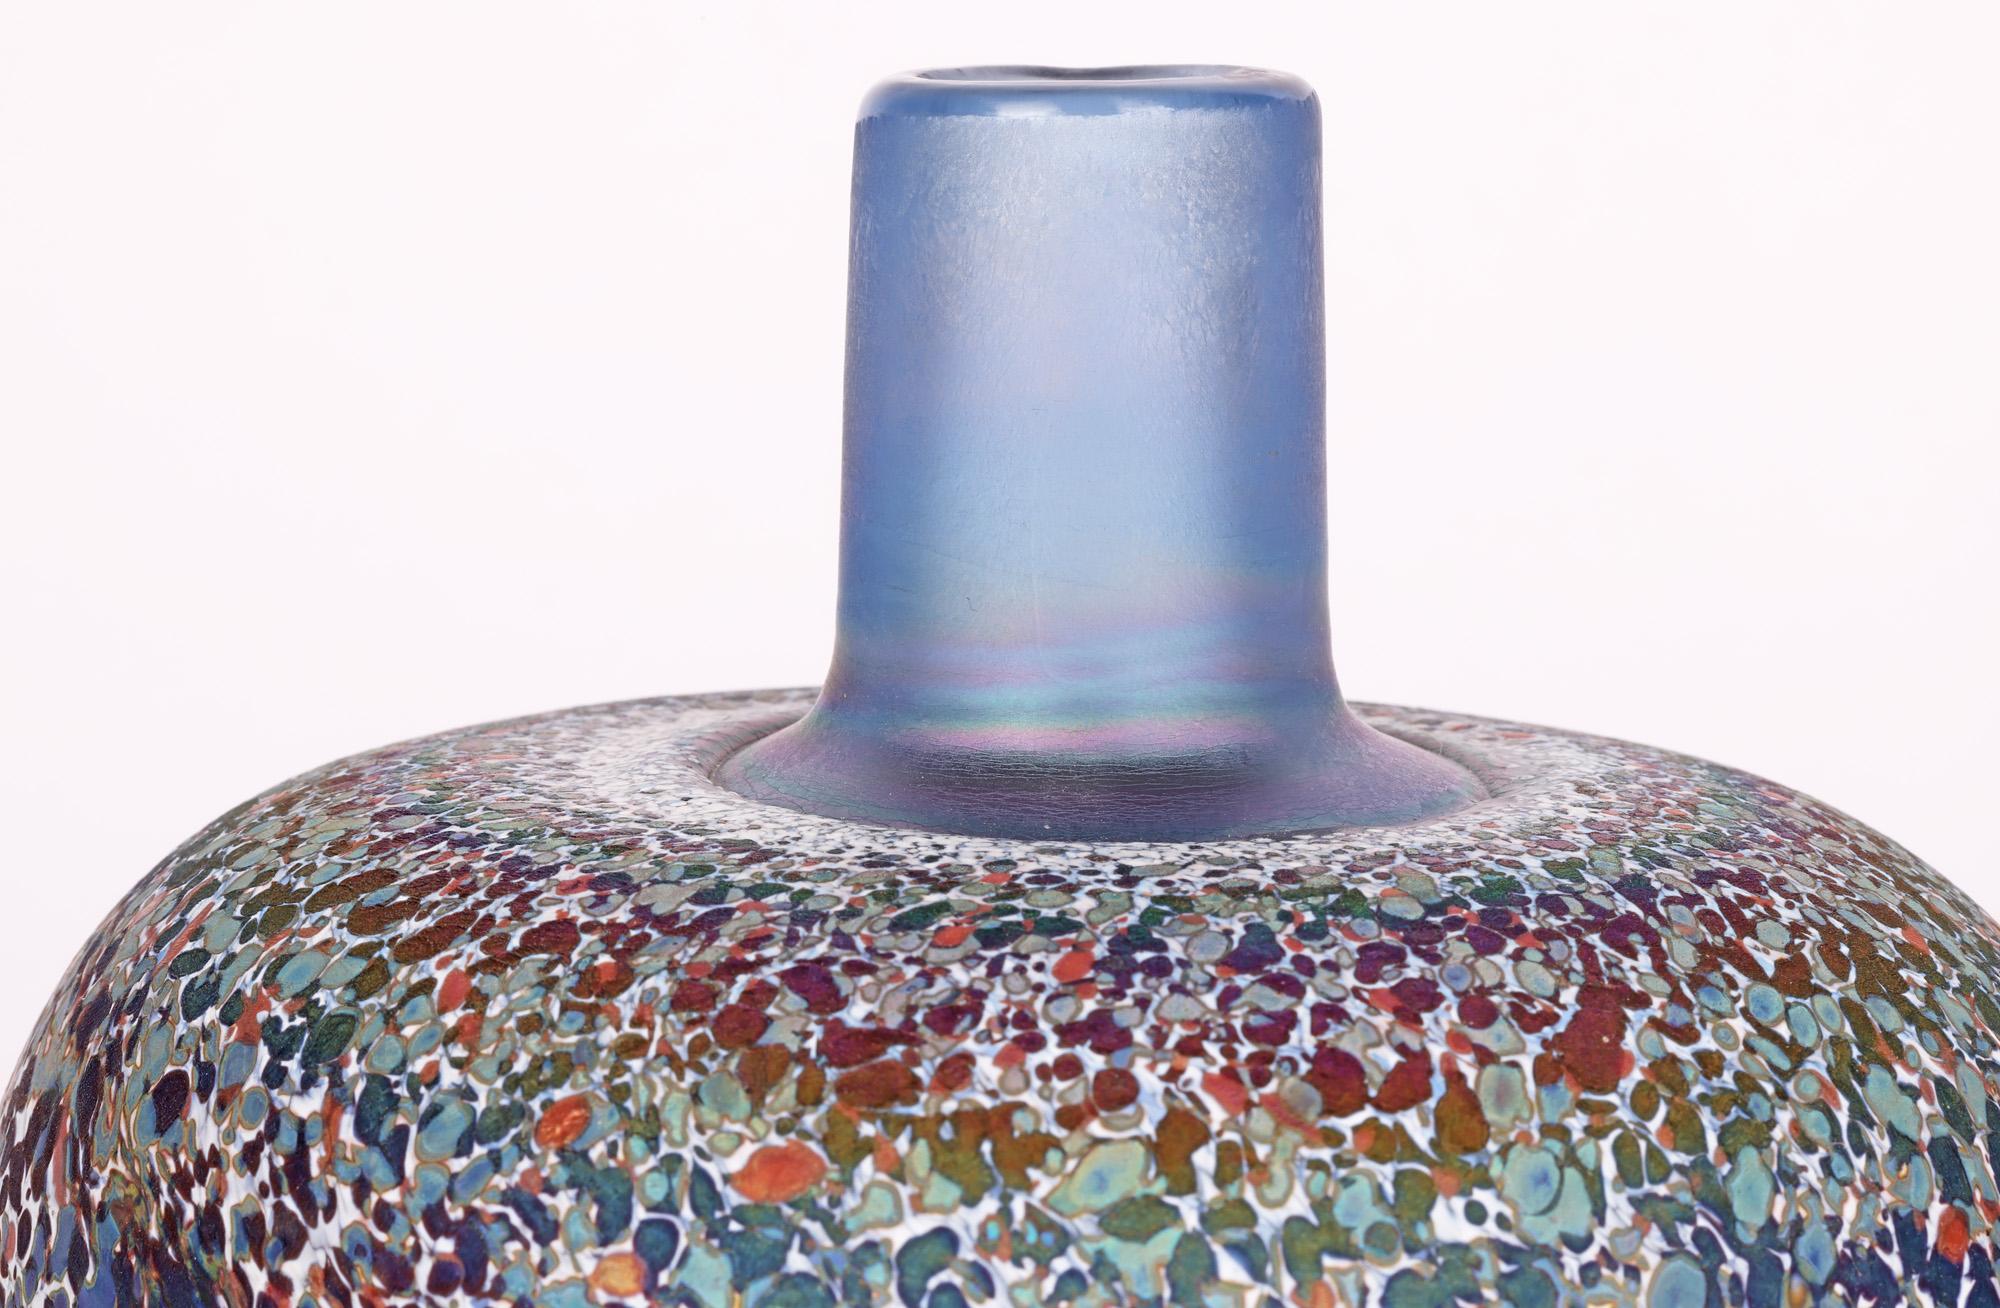 Rare et remarquable vase en verre d'art suédois réalisé pour Kosta Boda par le célèbre verrier Bertil Vallien (suédois, né en 1938) et datant des années 1970. Le vase à corps carré est décoré d'un motif de confettis colorés et fait partie d'une